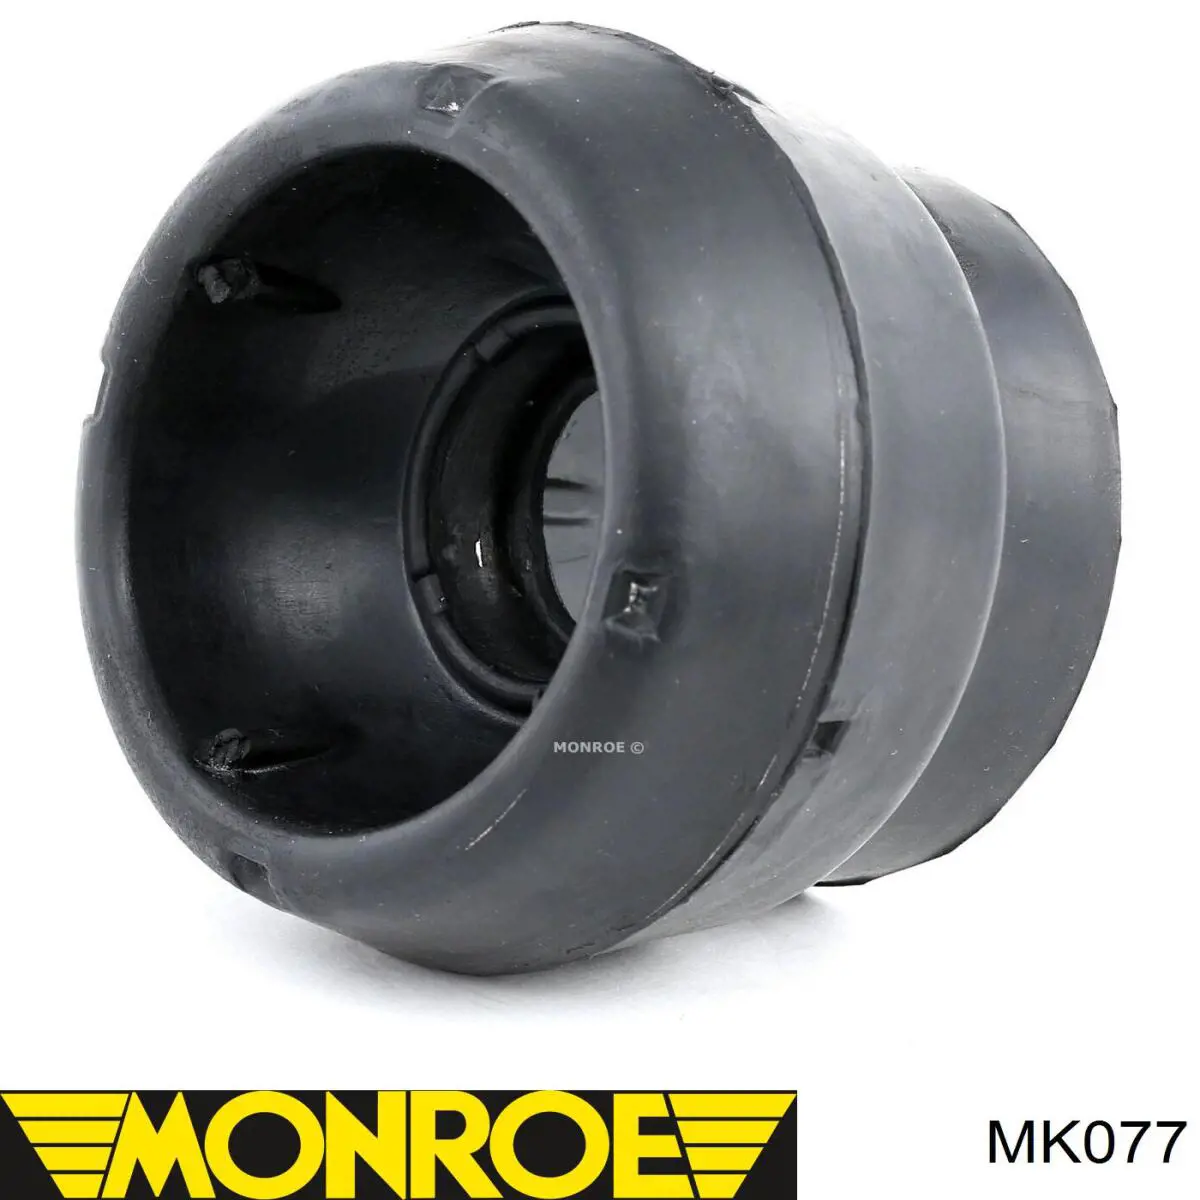 MK077 Monroe soporte amortiguador delantero